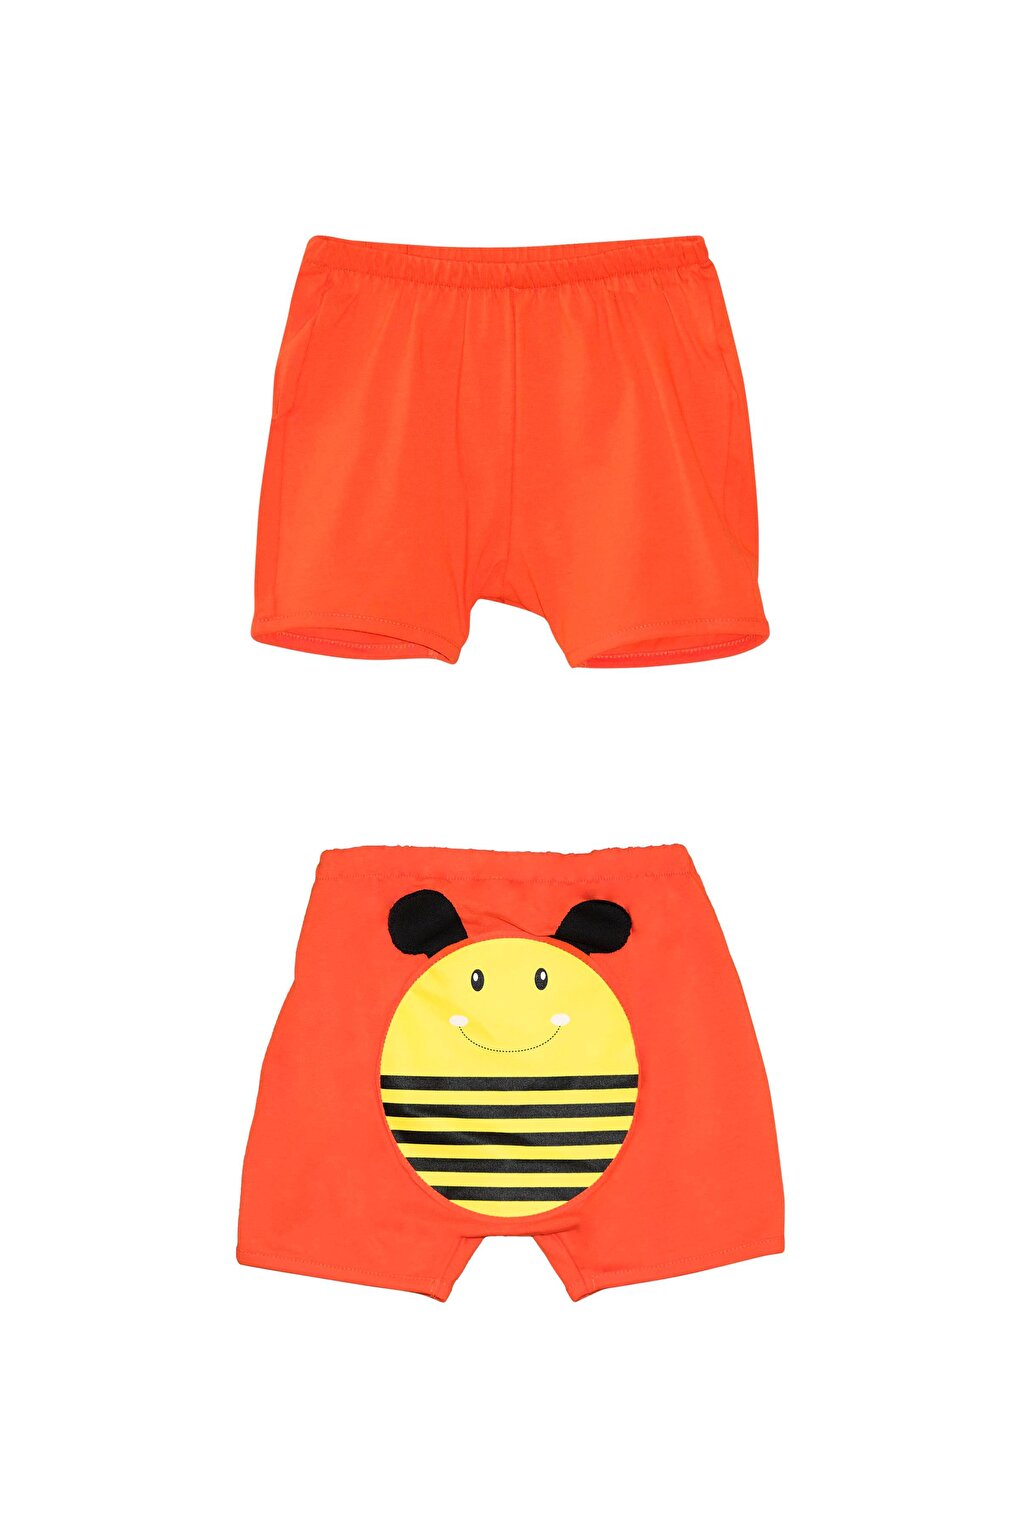 Оранжевые шорты с принтом пчел для девочек Lovetti